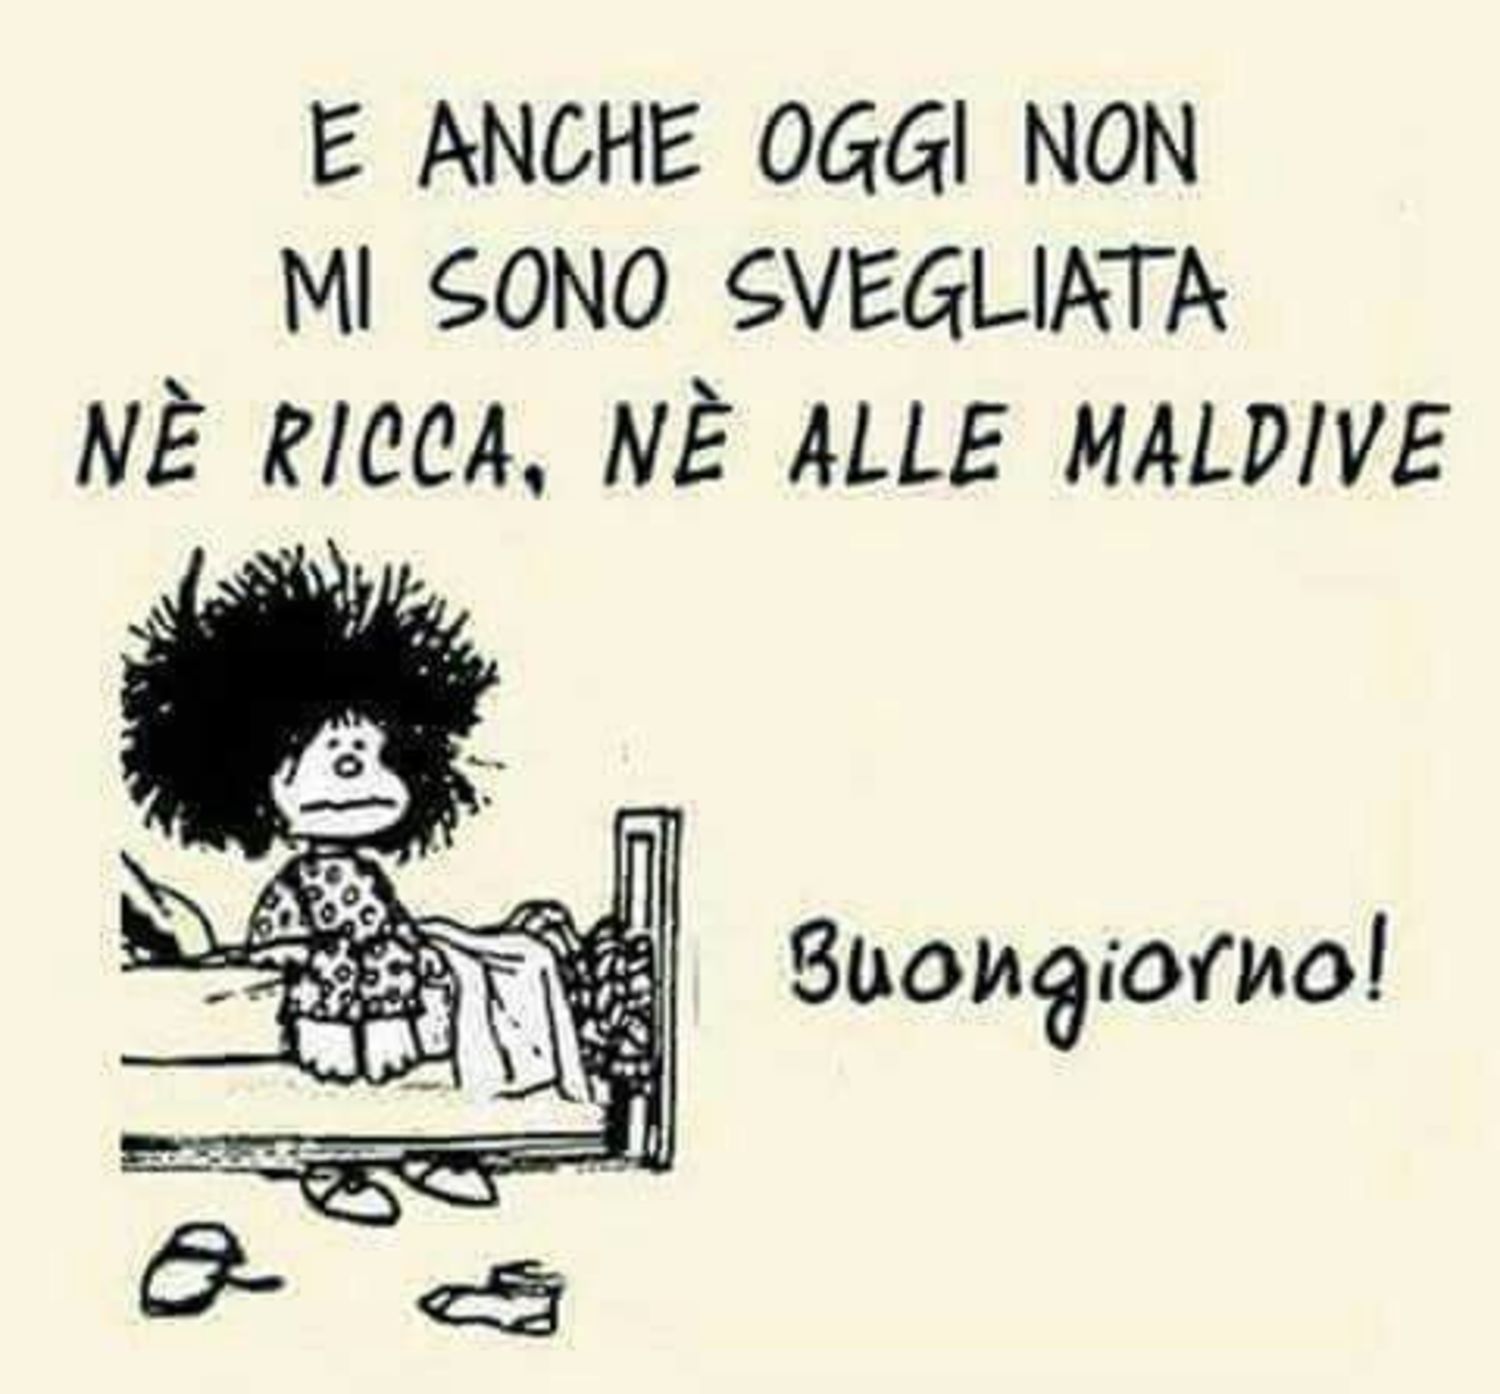 Immagini Buongiorno Mafalda 4 - Buongiorno-Immagini.it